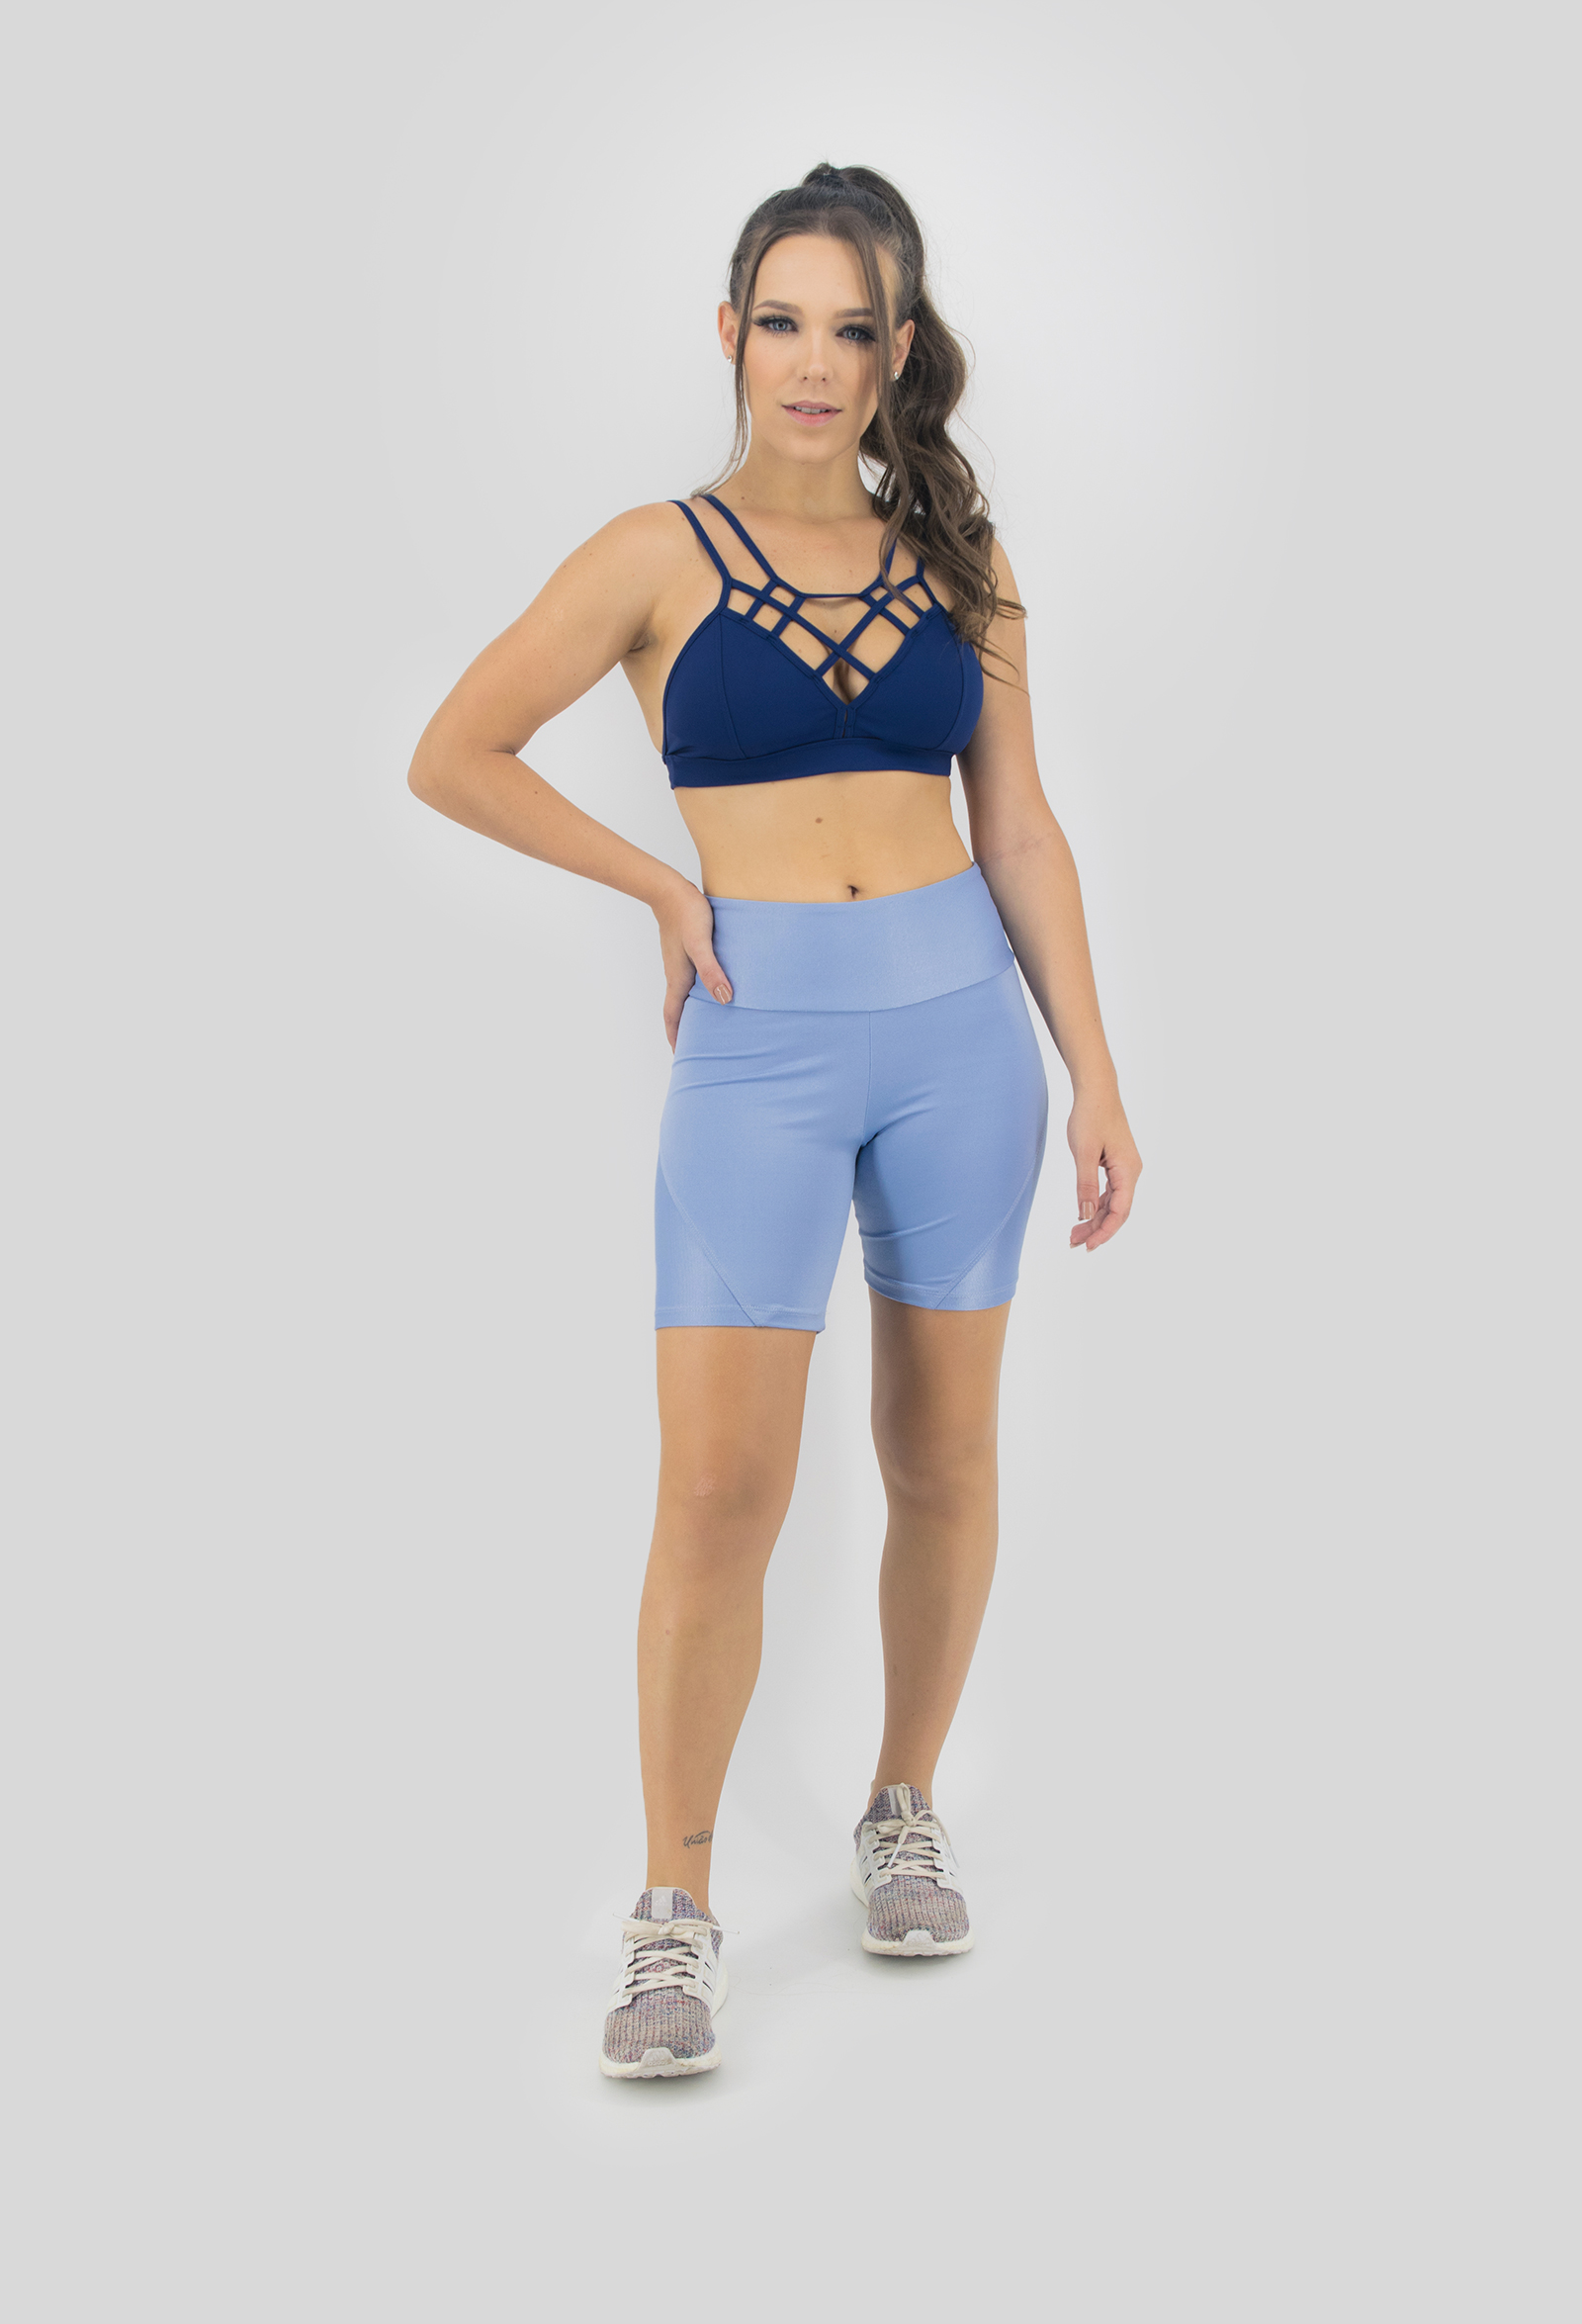 Bermuda Femme Azul Céu, Coleção Move Your Body - NKT Fitwear Moda Fitness